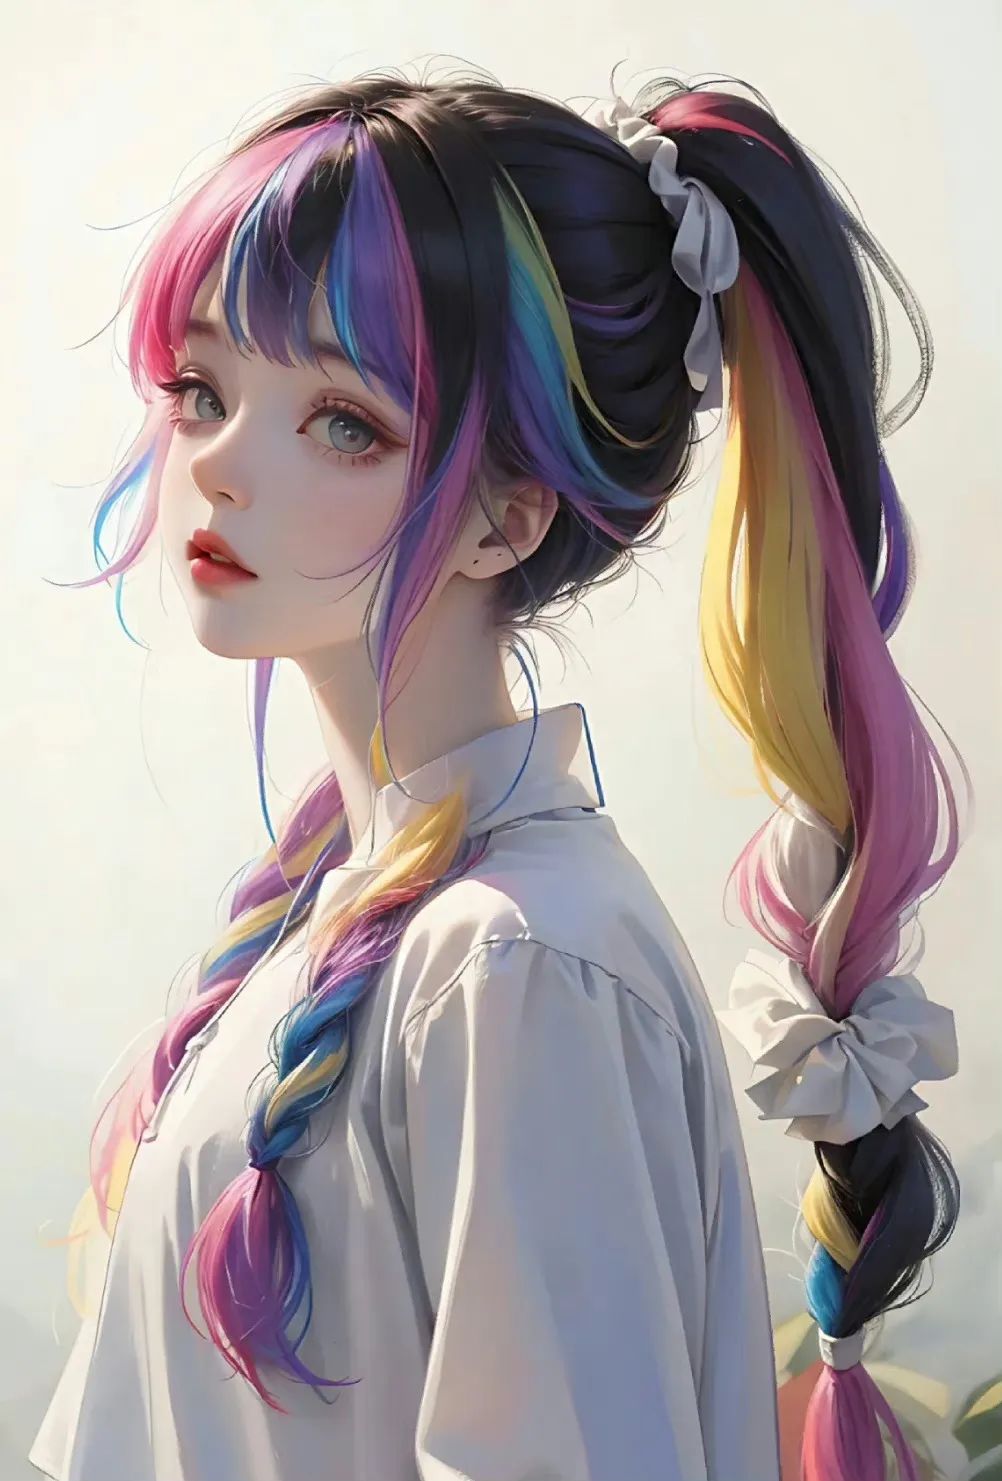 小央宝:彩虹发色的少女,可做头像!